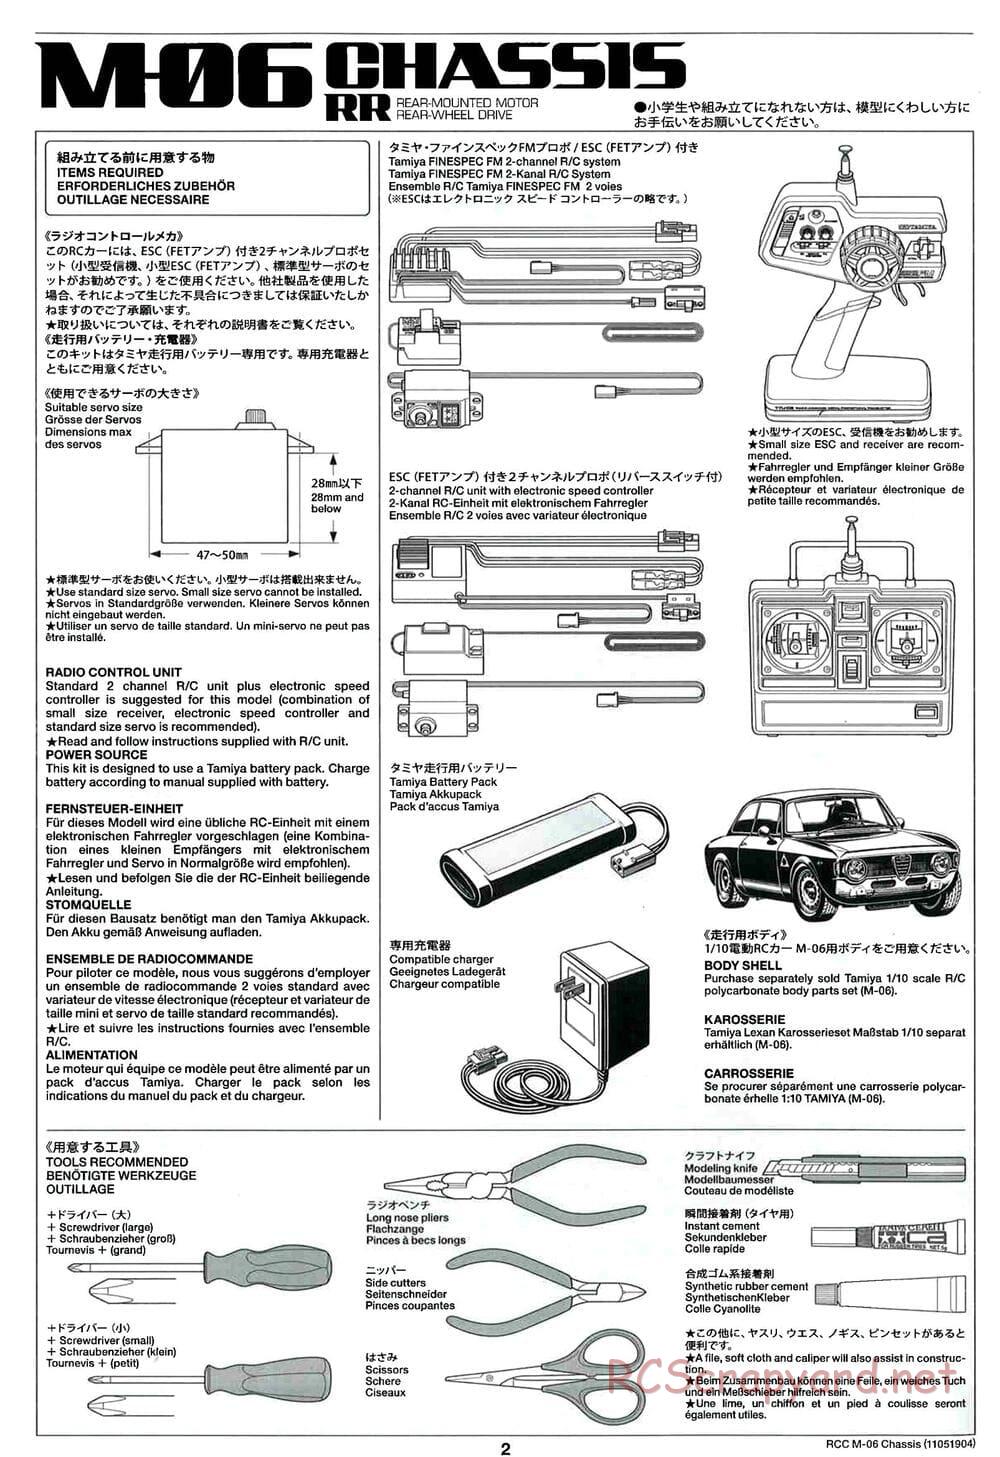 Tamiya - M-06 Chassis - Manual - Page 2